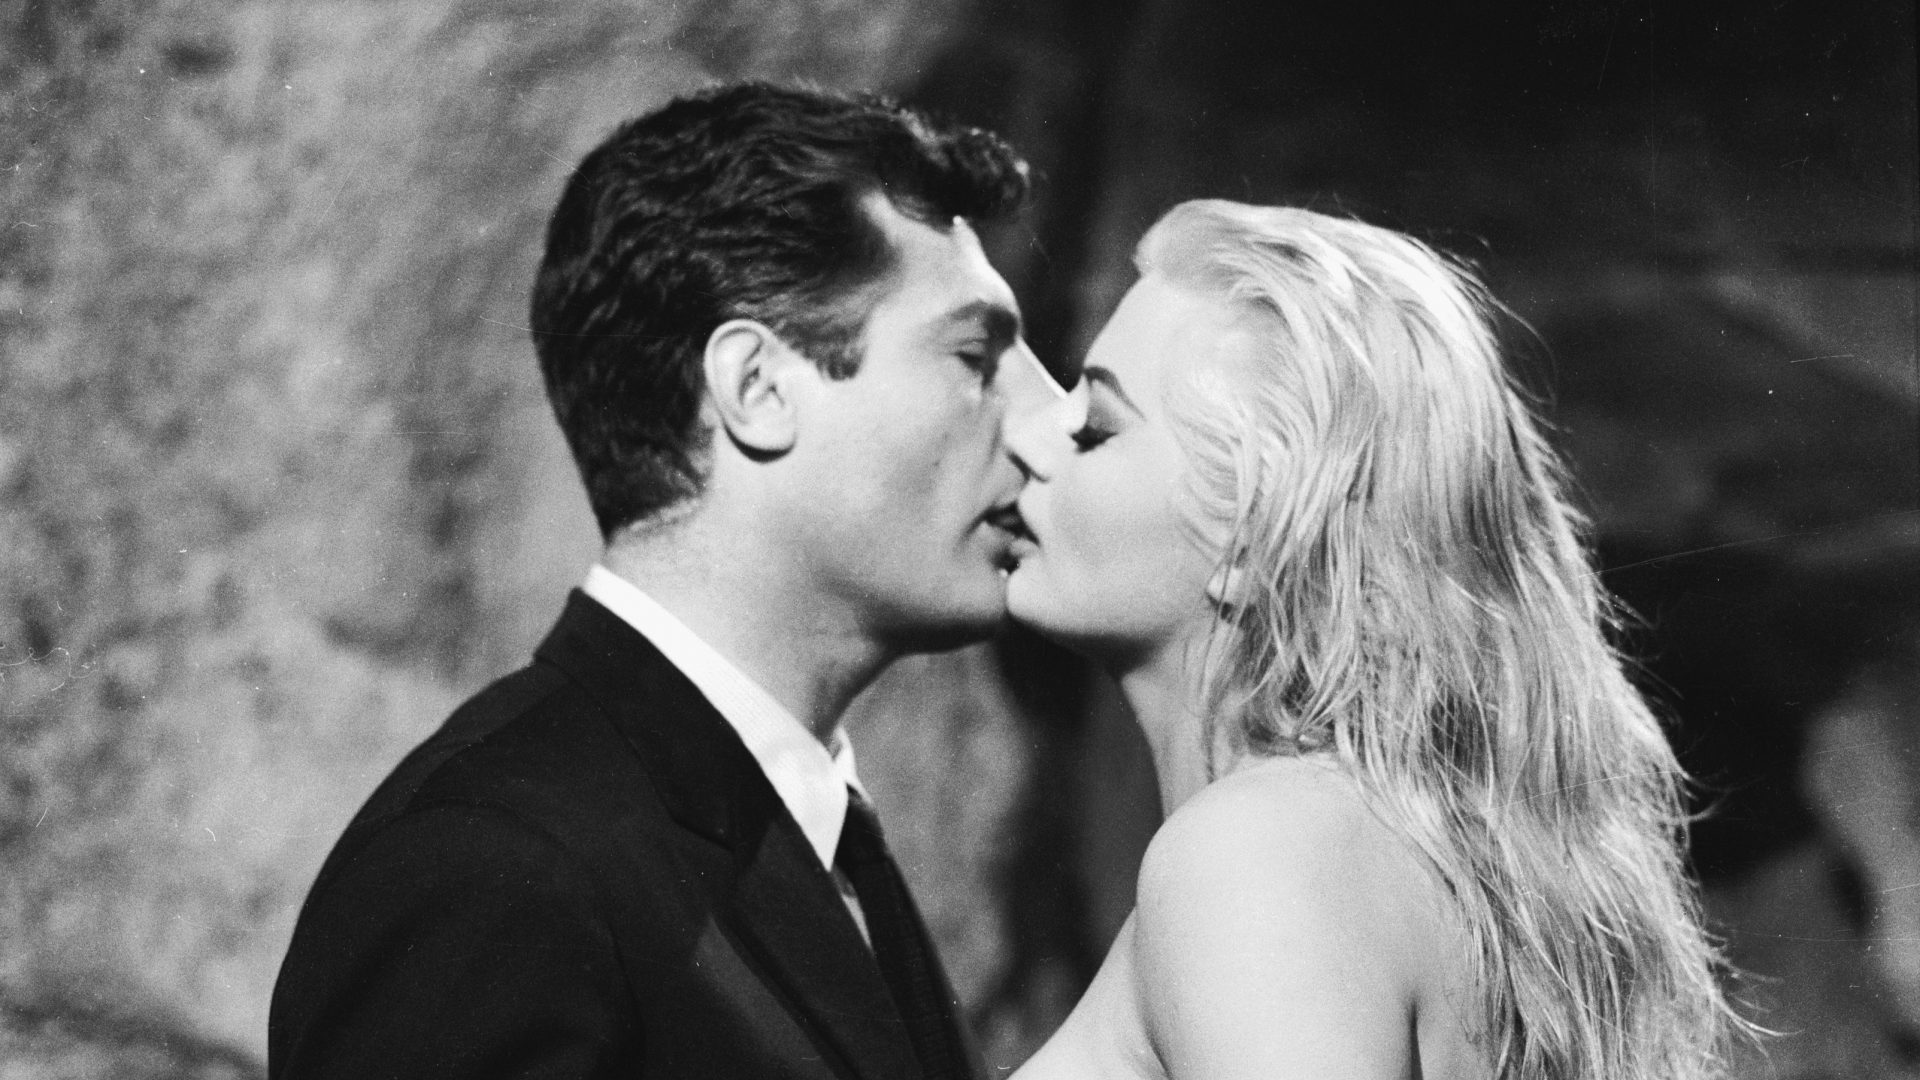 Marcello Mastroianni and Anita Ekberg in Fellini’s La Dolce Vita (1960), the quintessential Italian film. Image: Getty